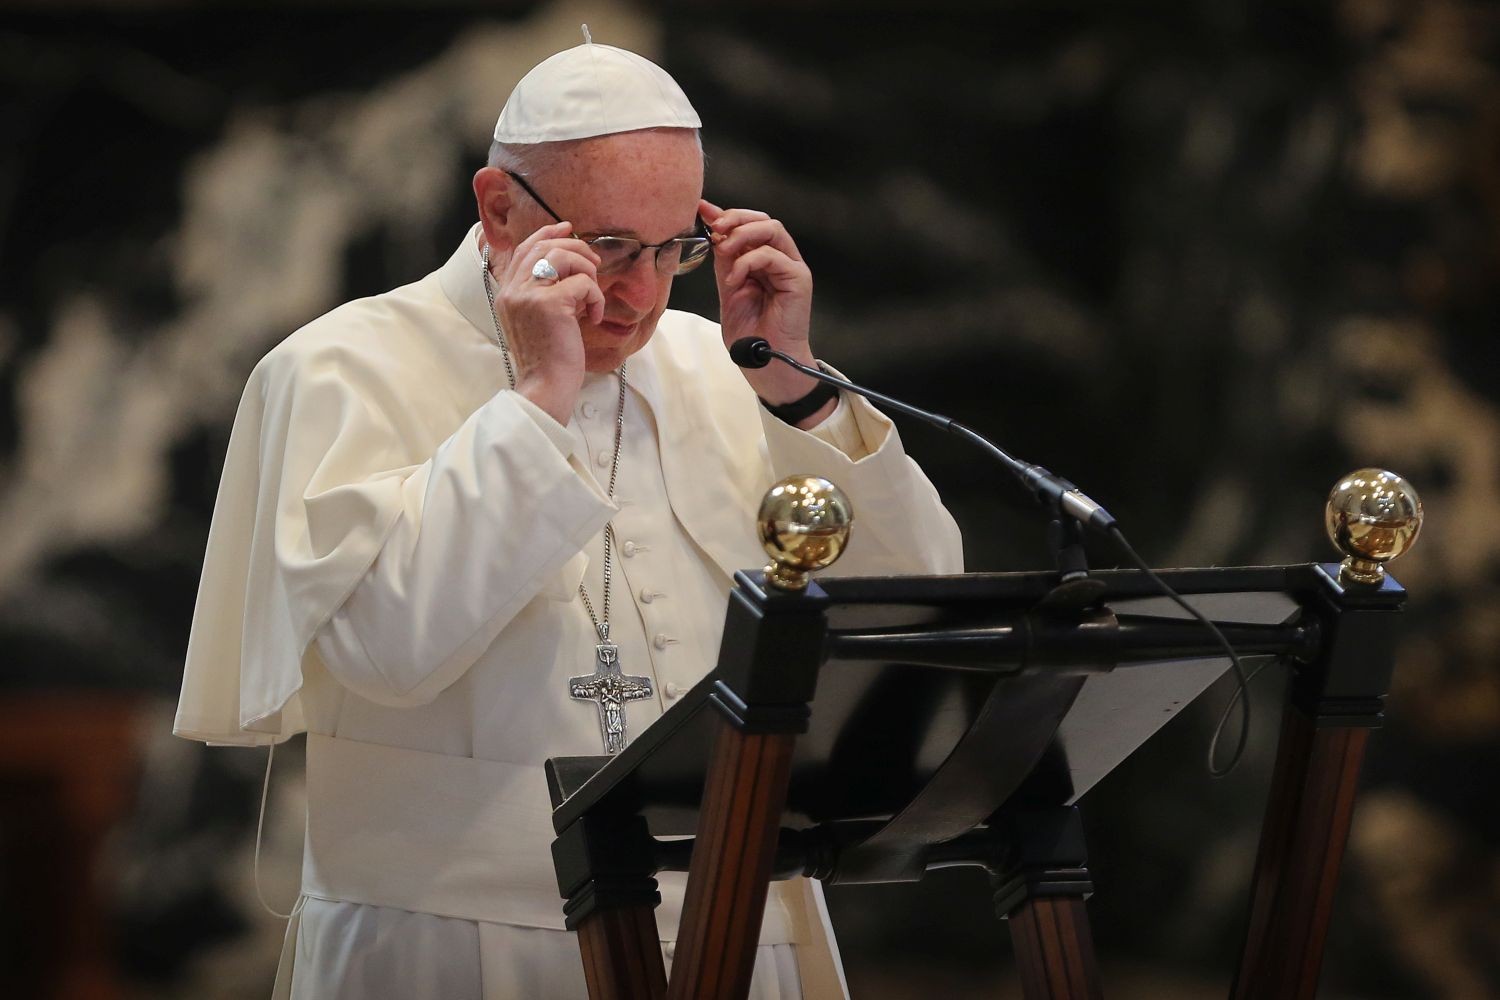 Jubeljaar - Wat staat er in de bul van de paus?